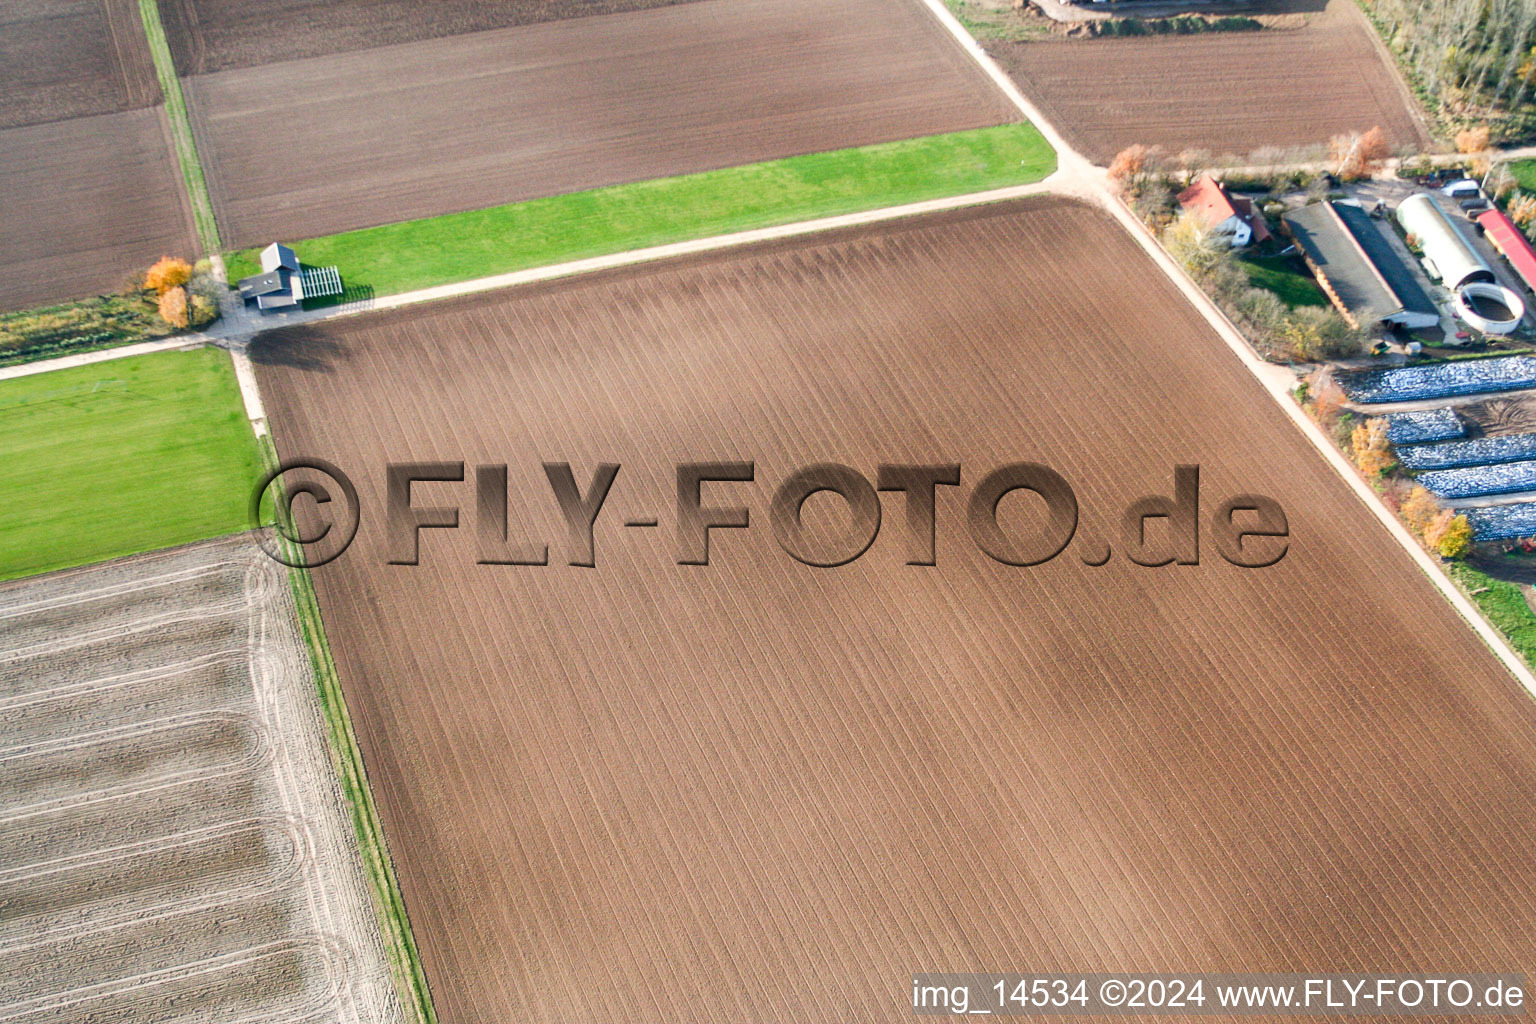 Modellflugplatz in Offenbach an der Queich im Bundesland Rheinland-Pfalz, Deutschland aus der Luft